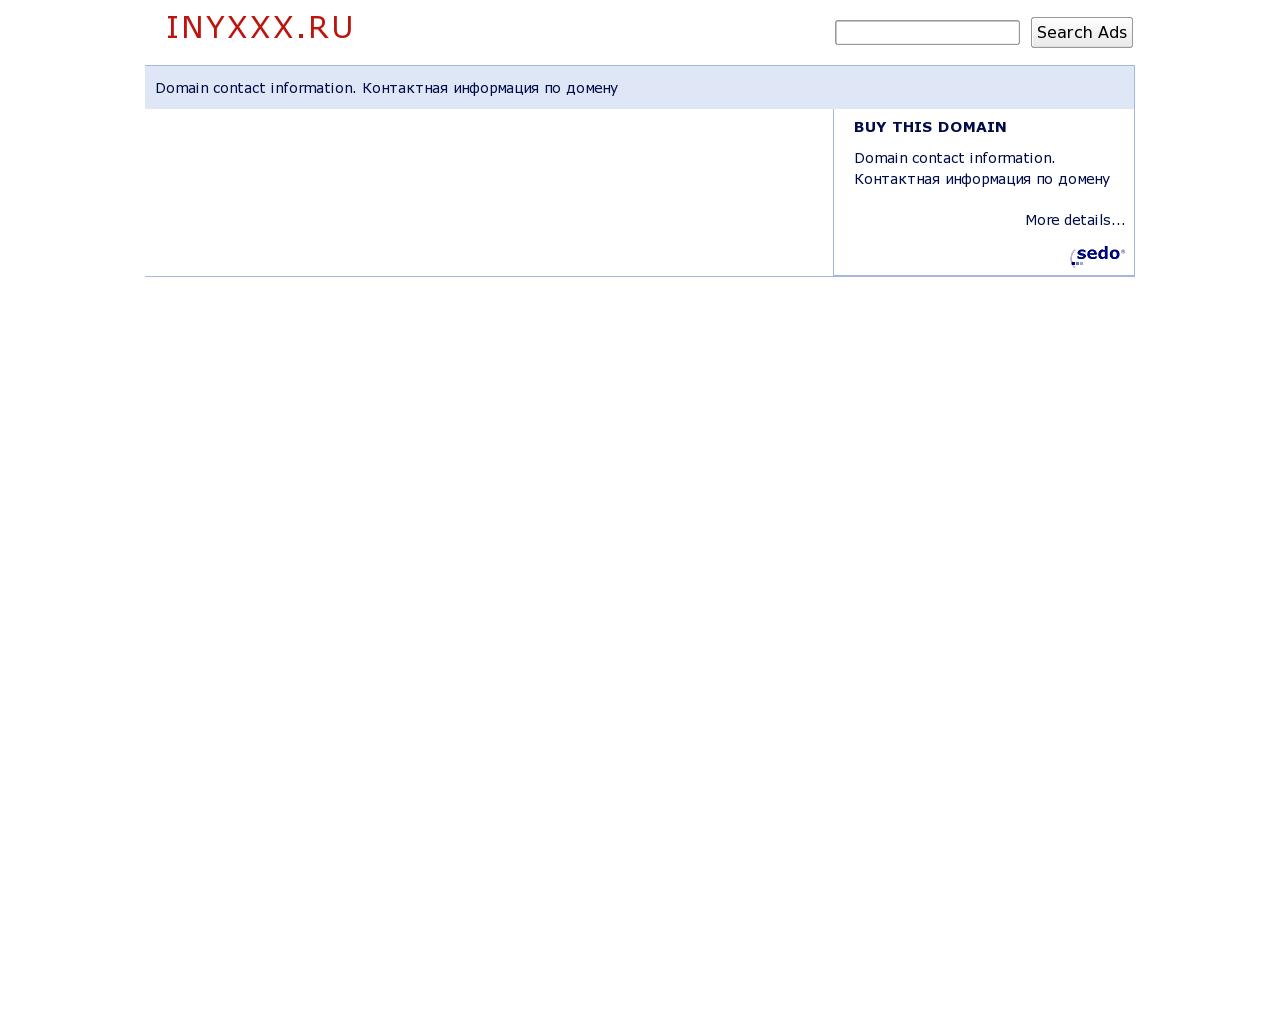 Изображение сайта inyxxx.ru в разрешении 1280x1024